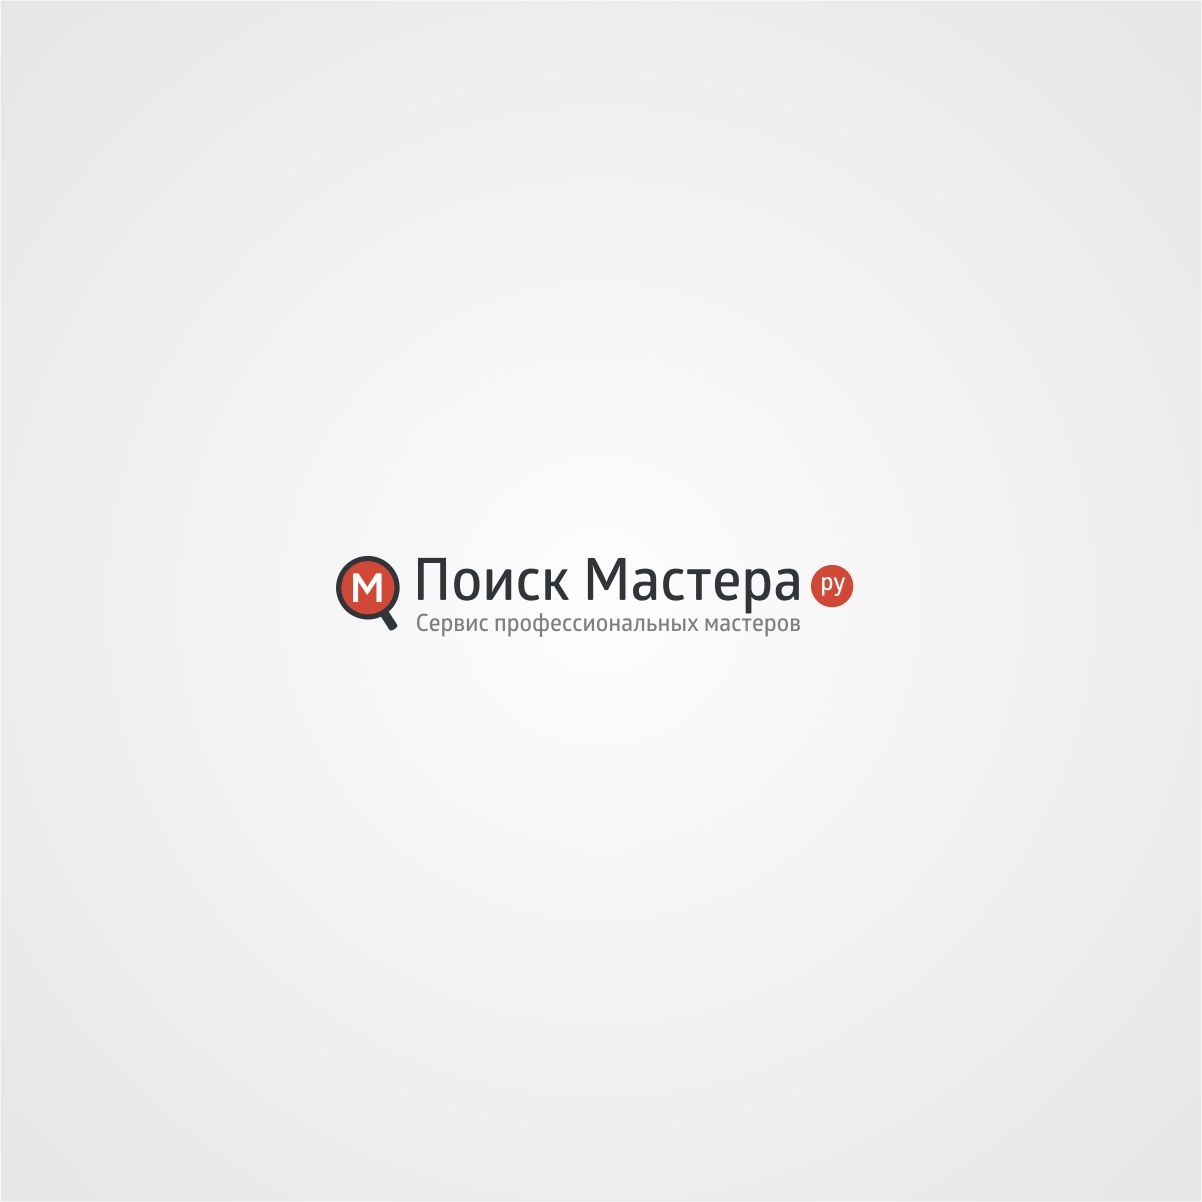 Логотип для сервиса мастеров - дизайнер TVdesign